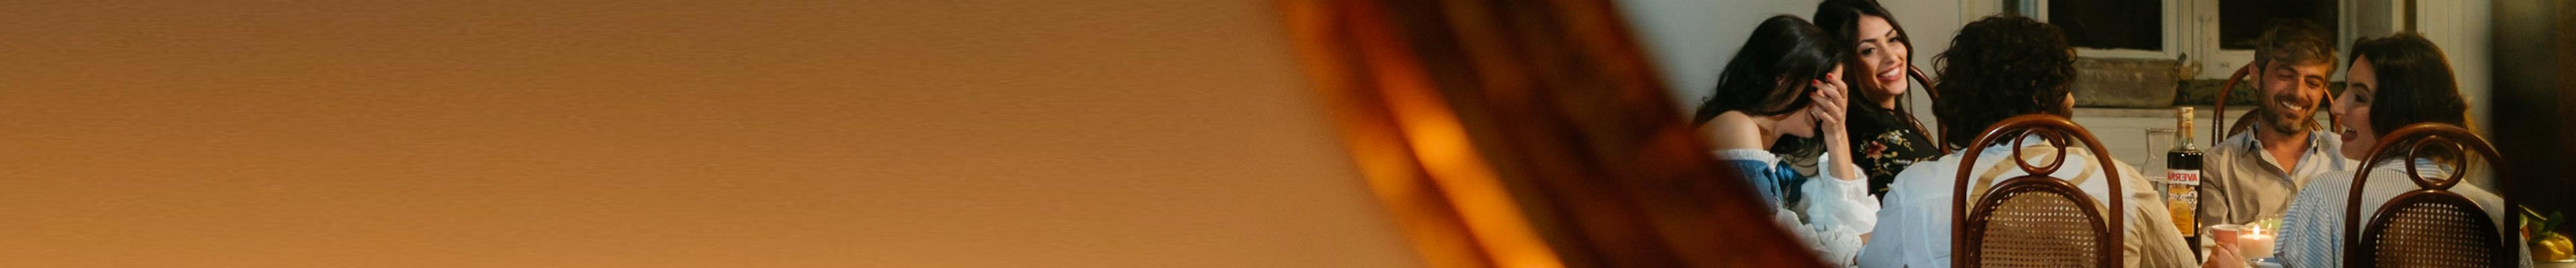 カンパリ カクテルコンペティションで優勝したバーテンダーたちによる1日限定スペシャルイベント「リビエラ × カンパリ カクテルナイト」7月31日（日）開催